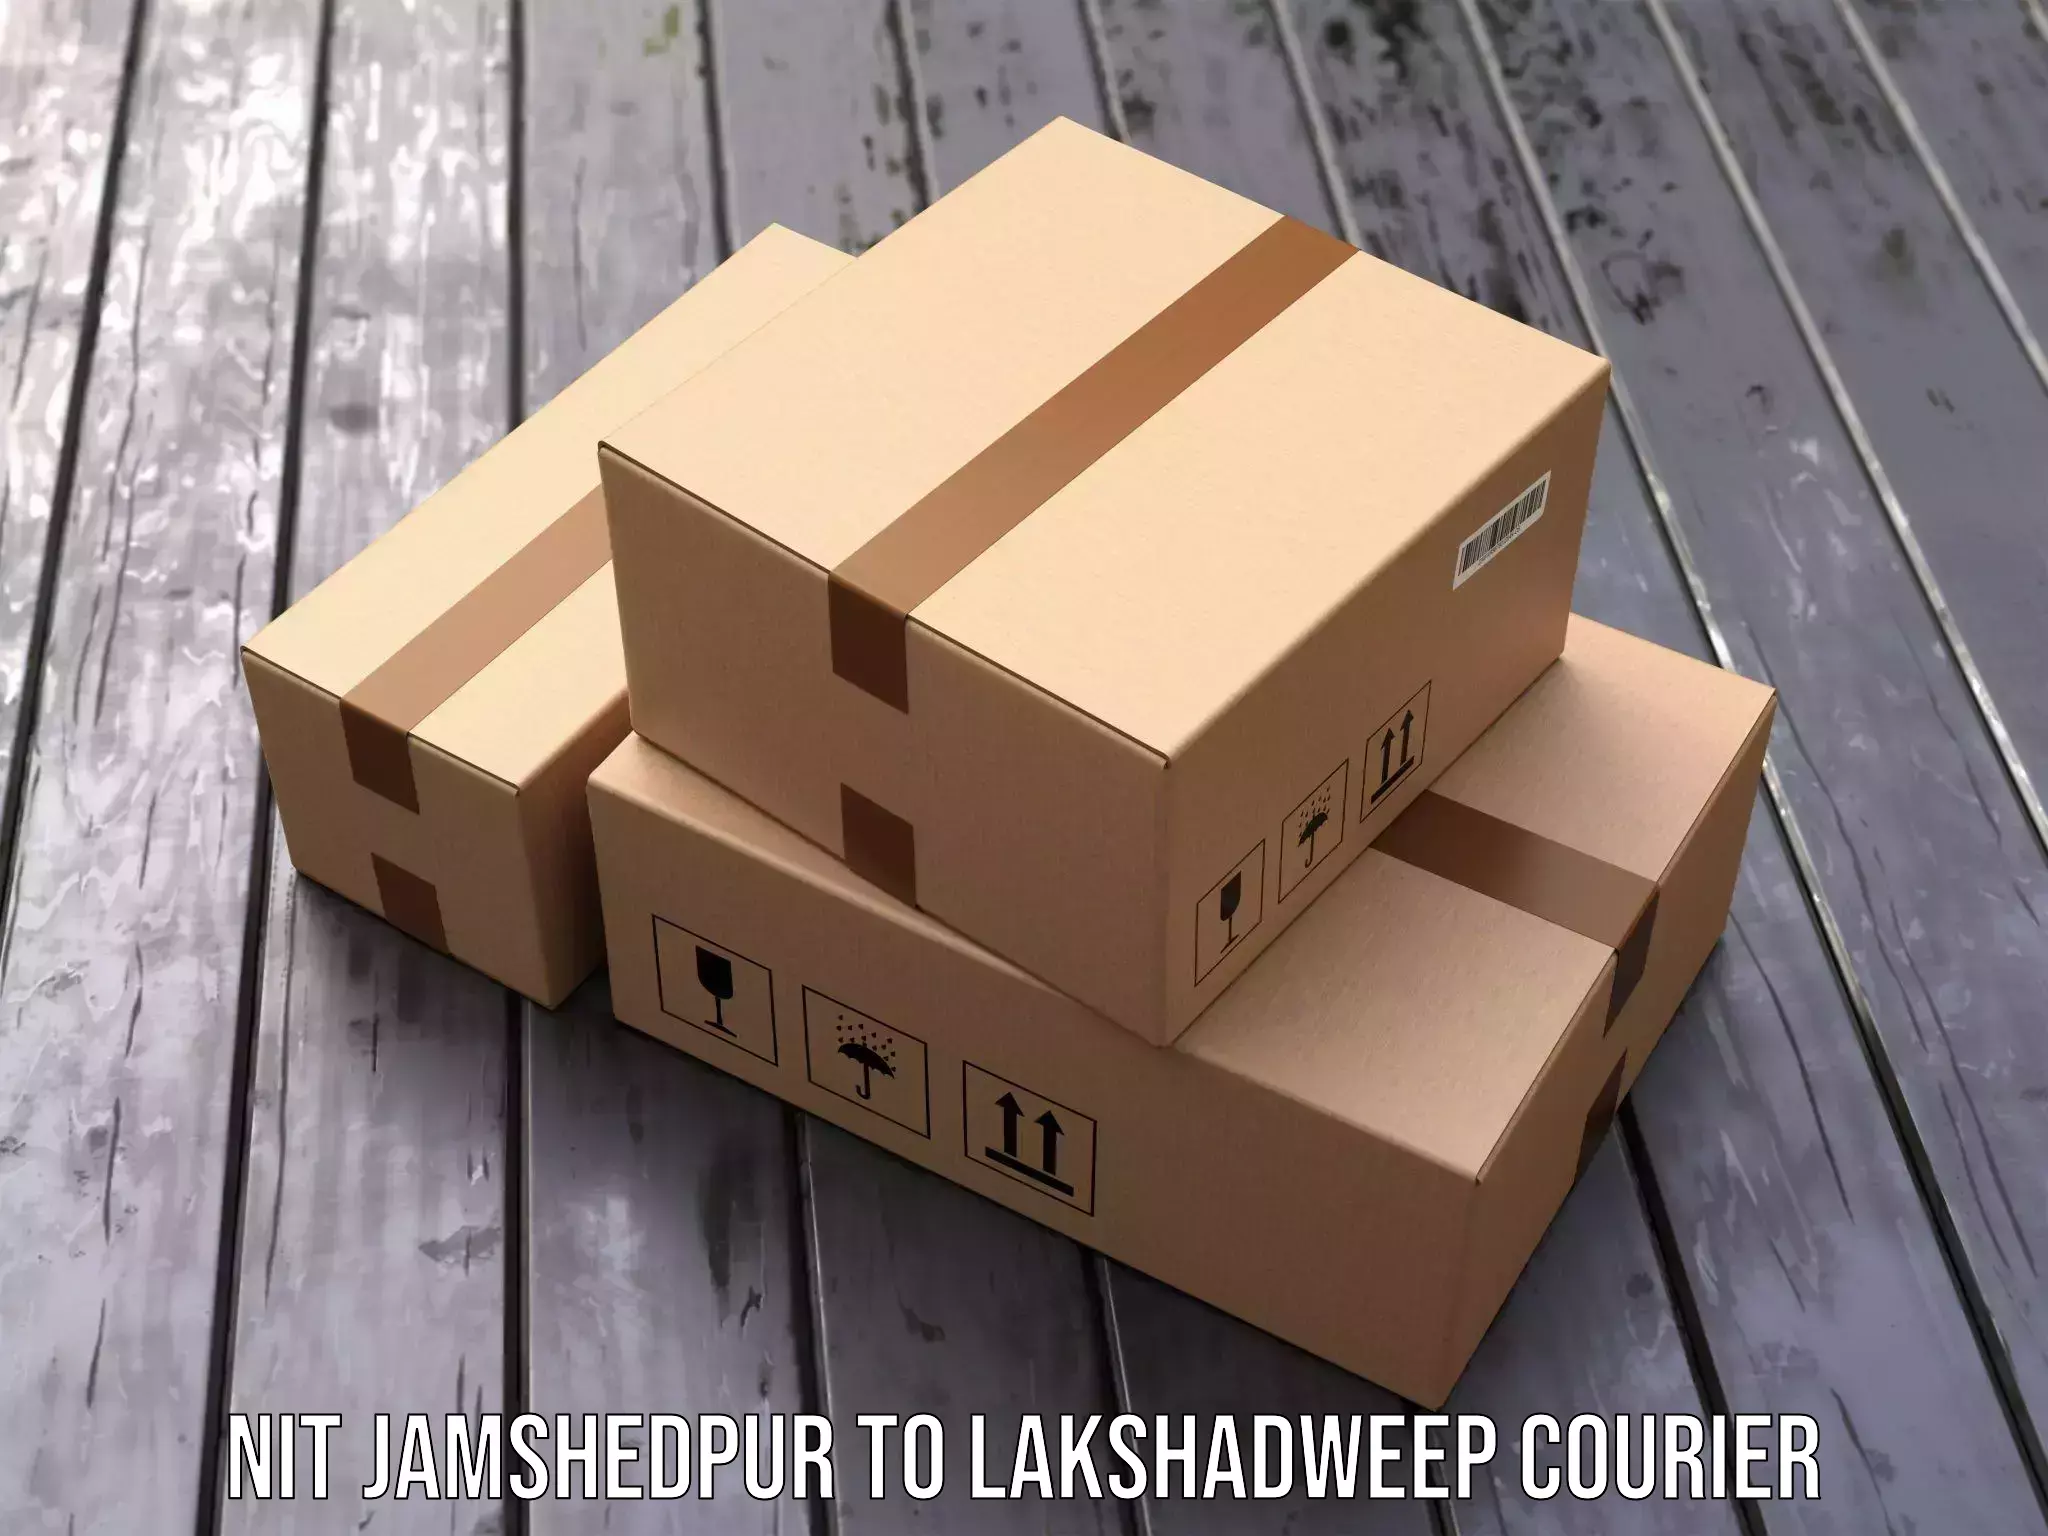 Doorstep delivery service NIT Jamshedpur to Lakshadweep